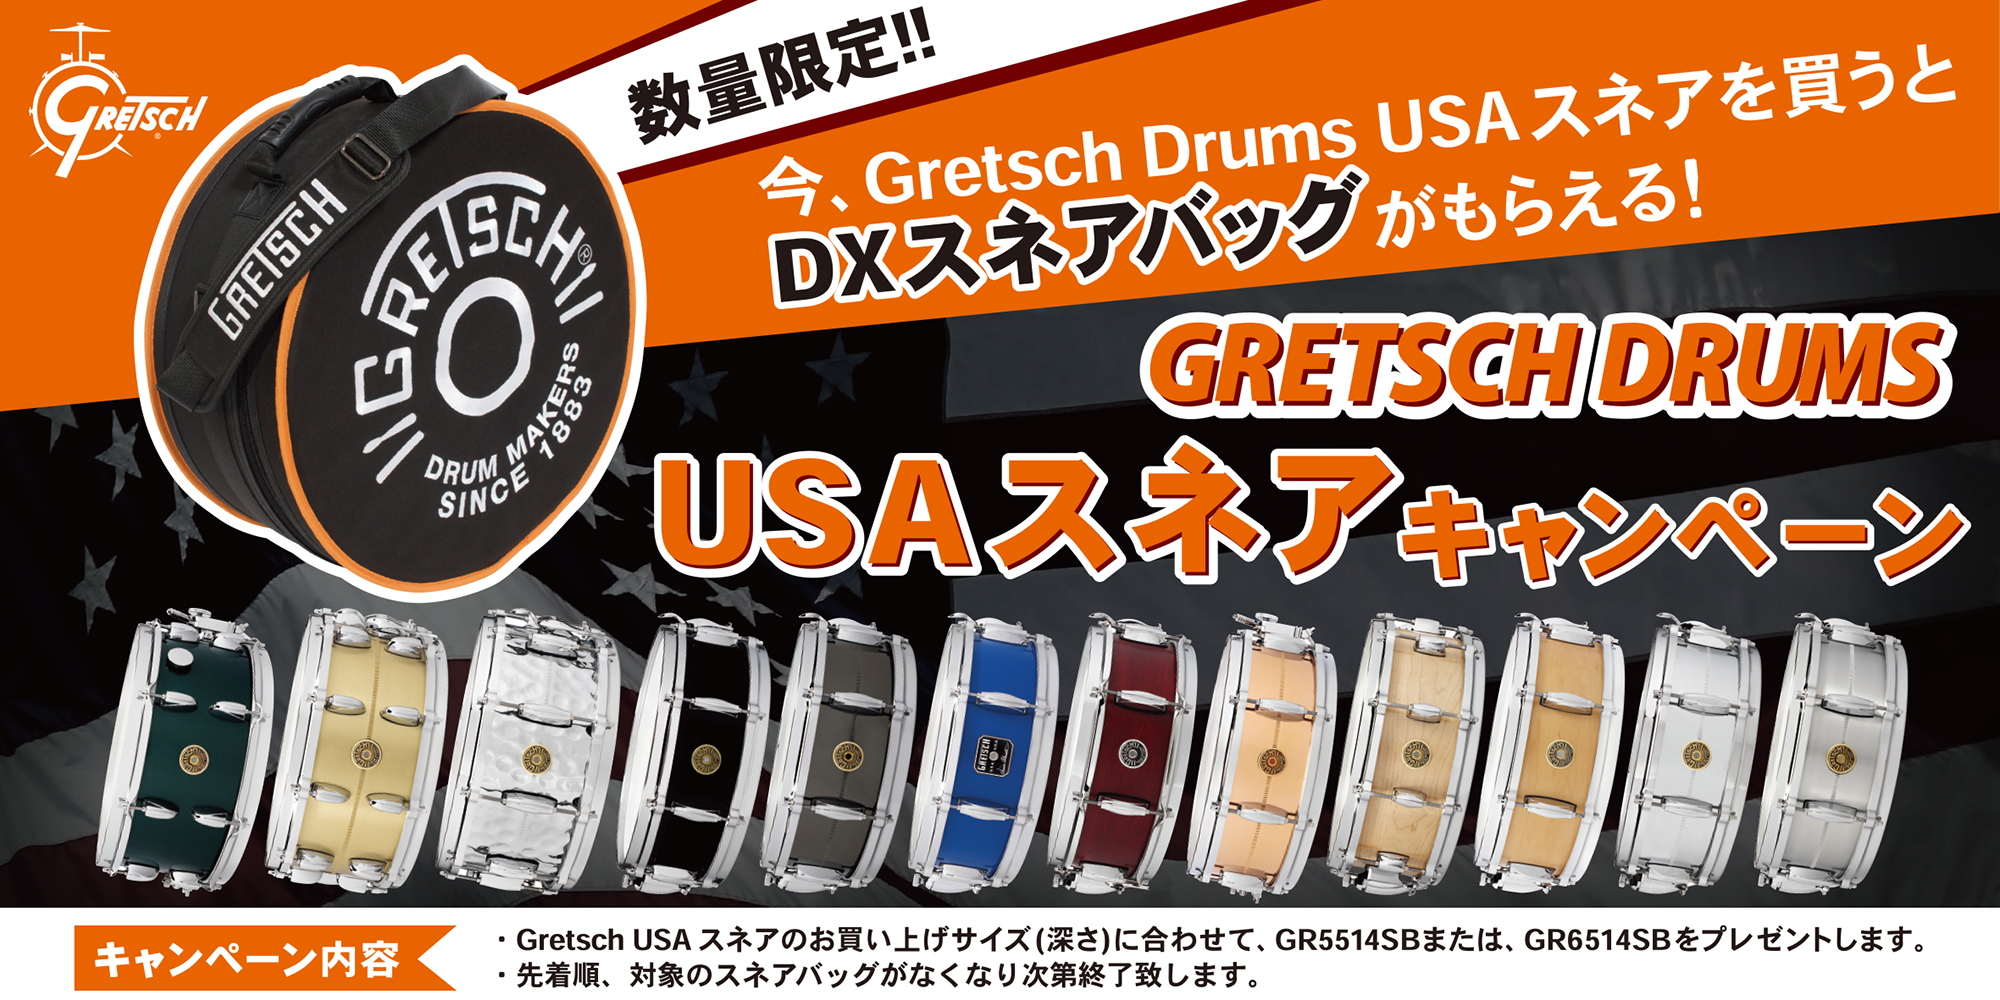 Gretsch Drums USA スネア キャンペーン